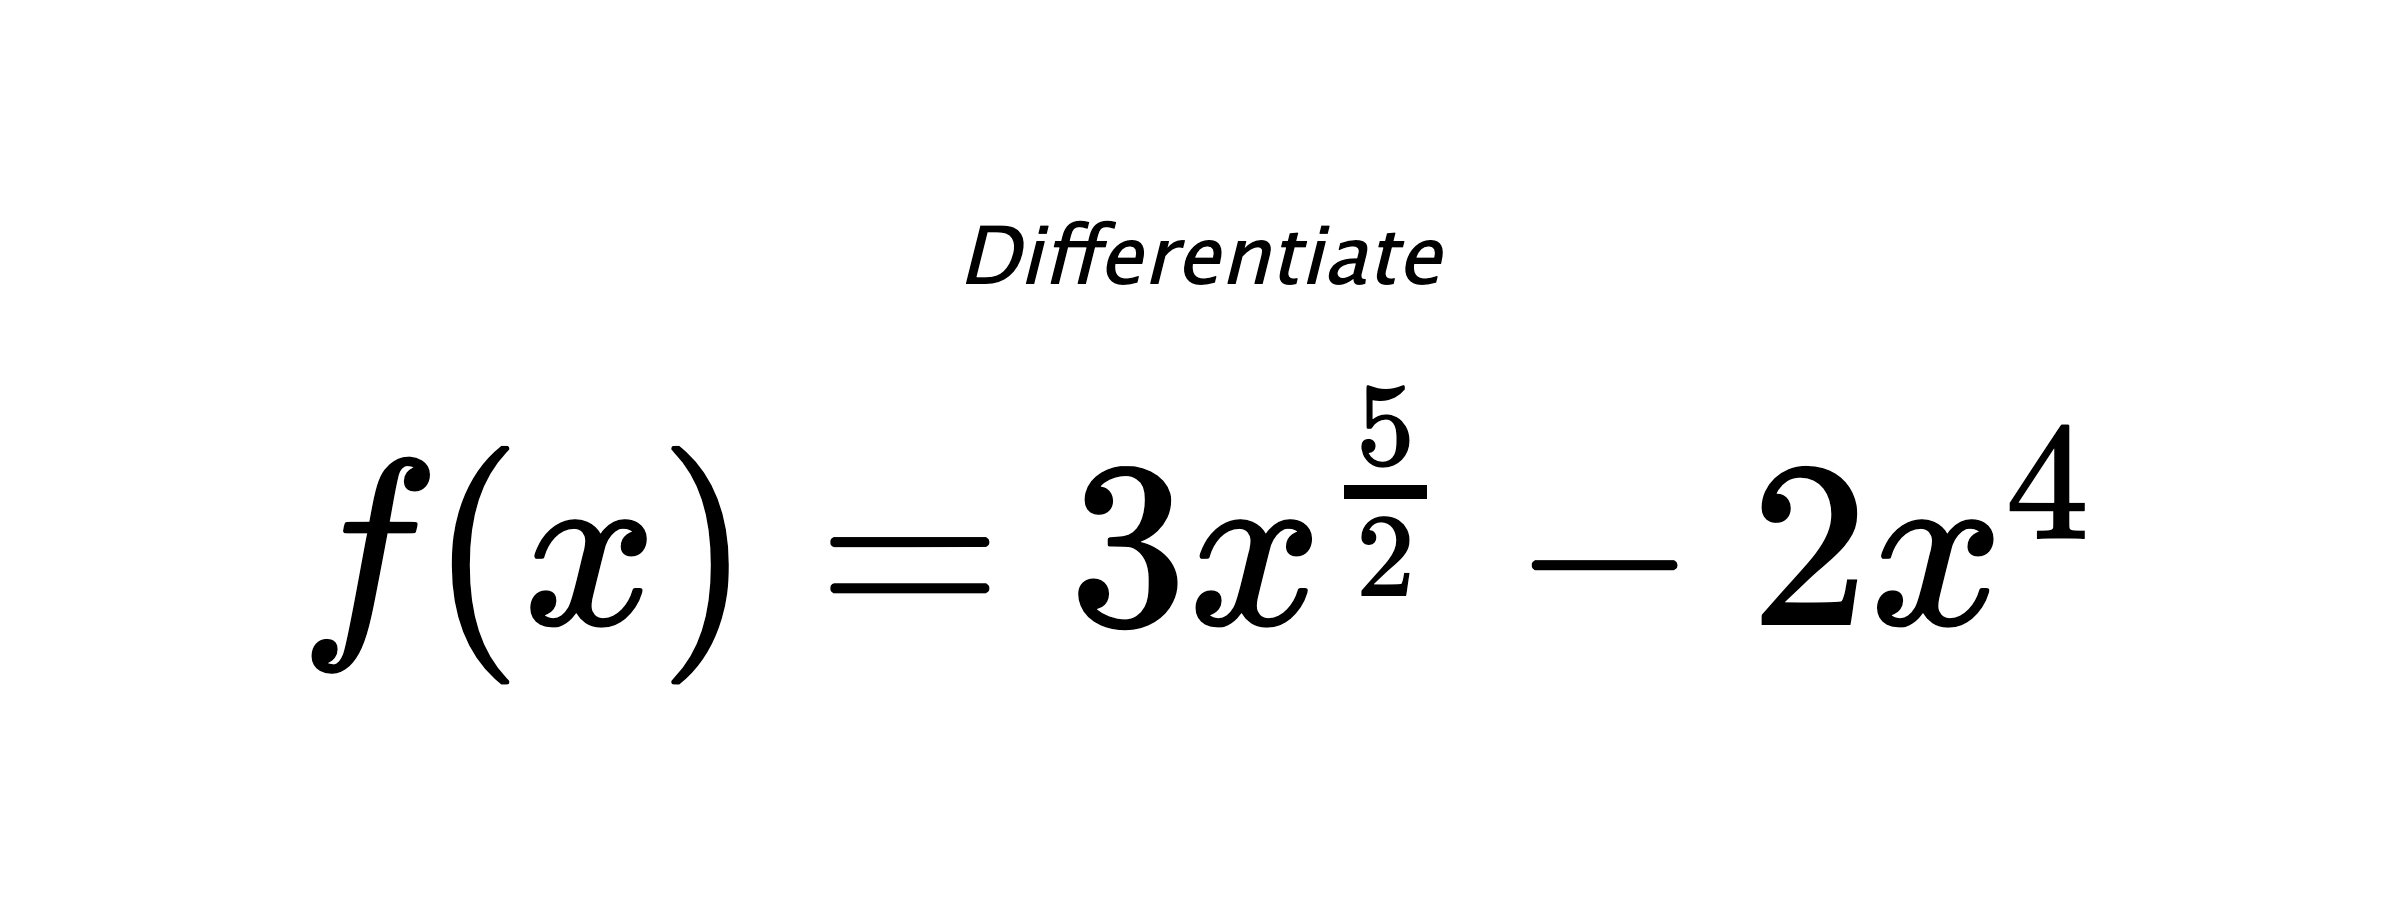 Differentiate $ f(x) = 3 x^{\frac{5}{2}} - 2 x^{4} $